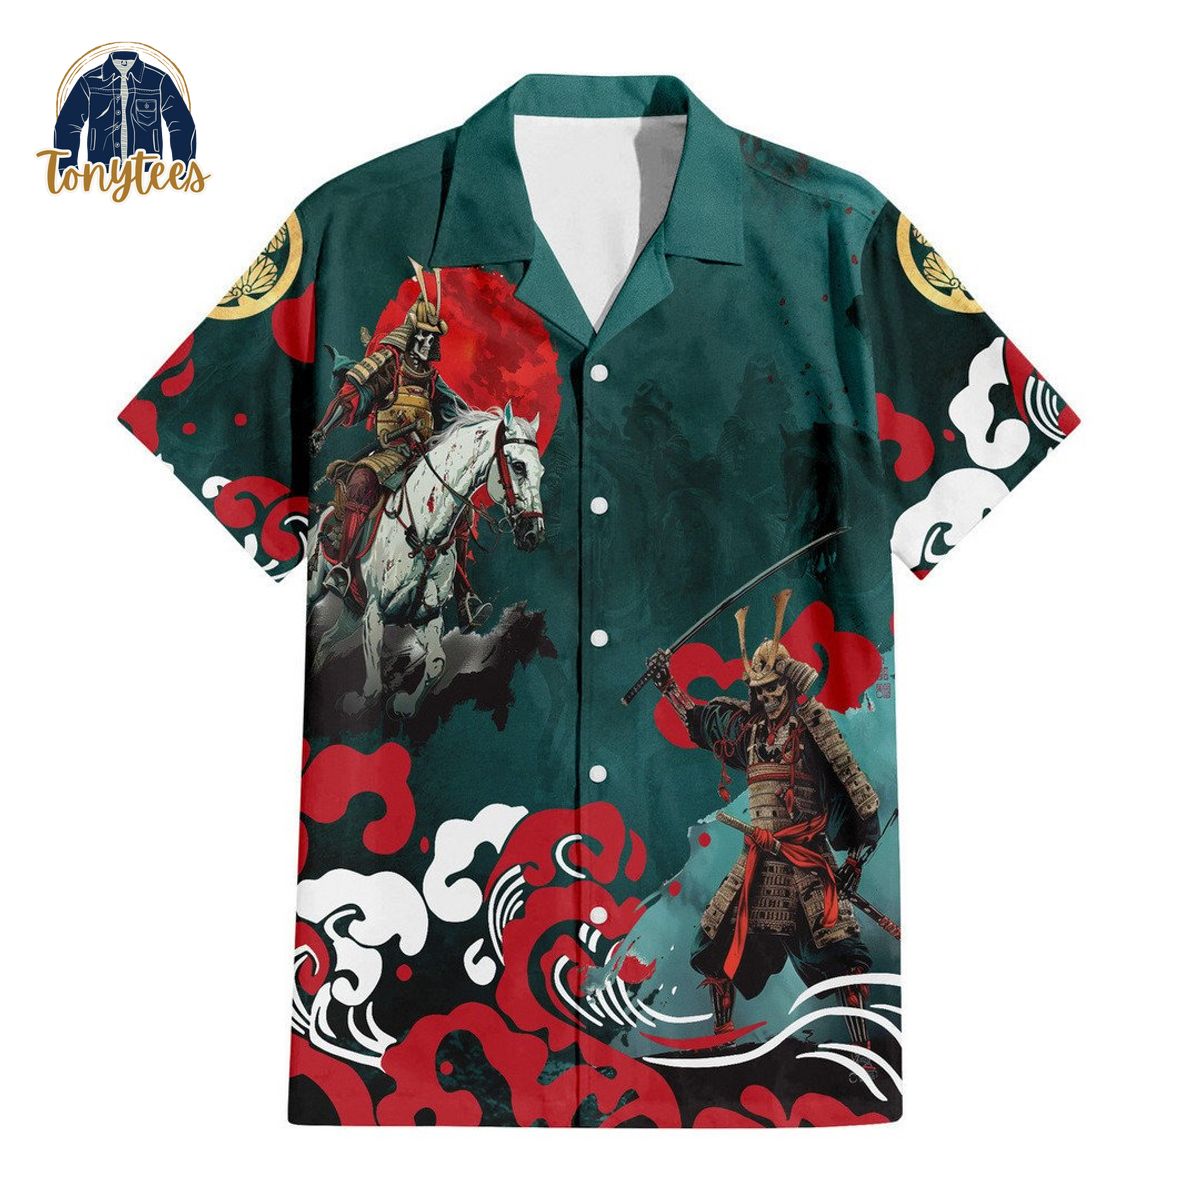 Shogun New Hawaiian Shirt